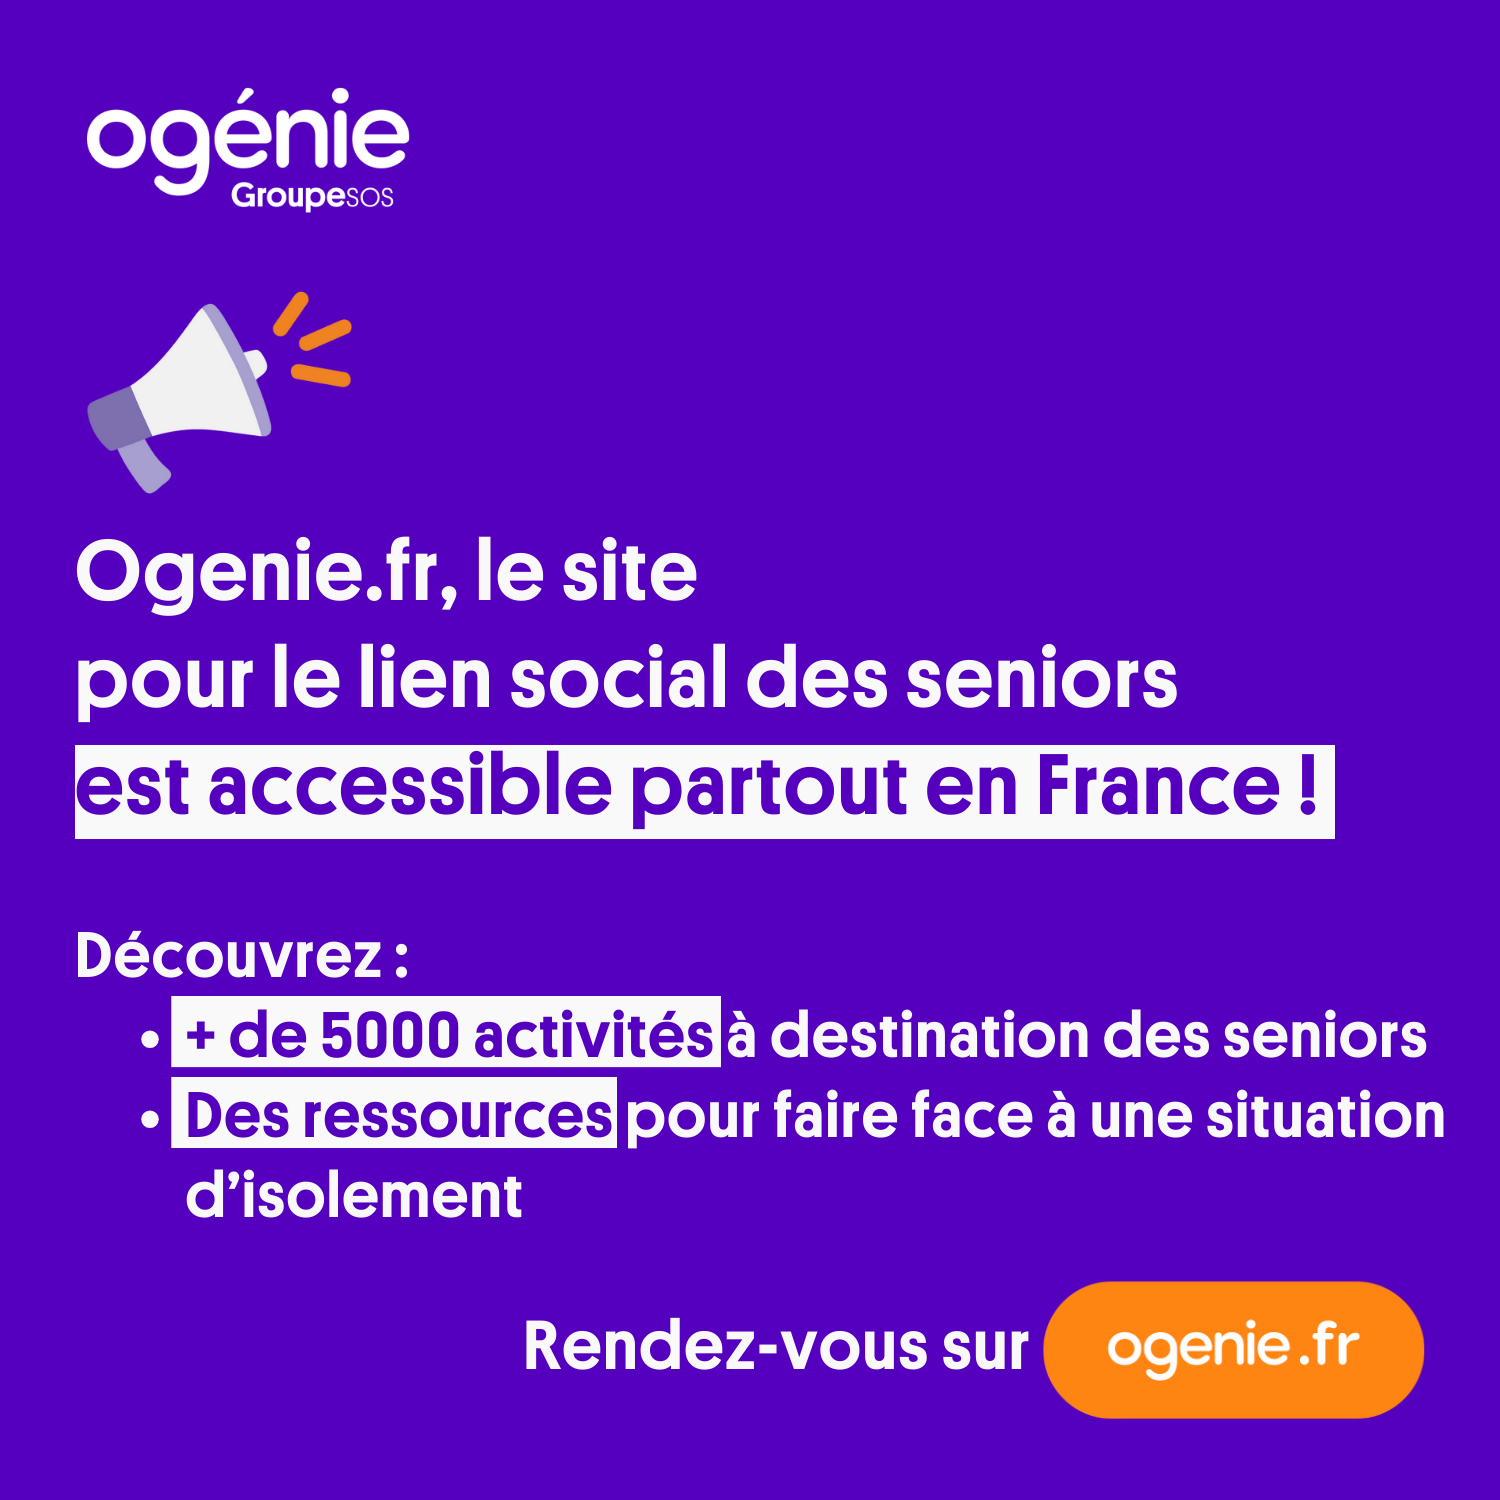 image : Ogenie.fr le site pour le lien social des séniors